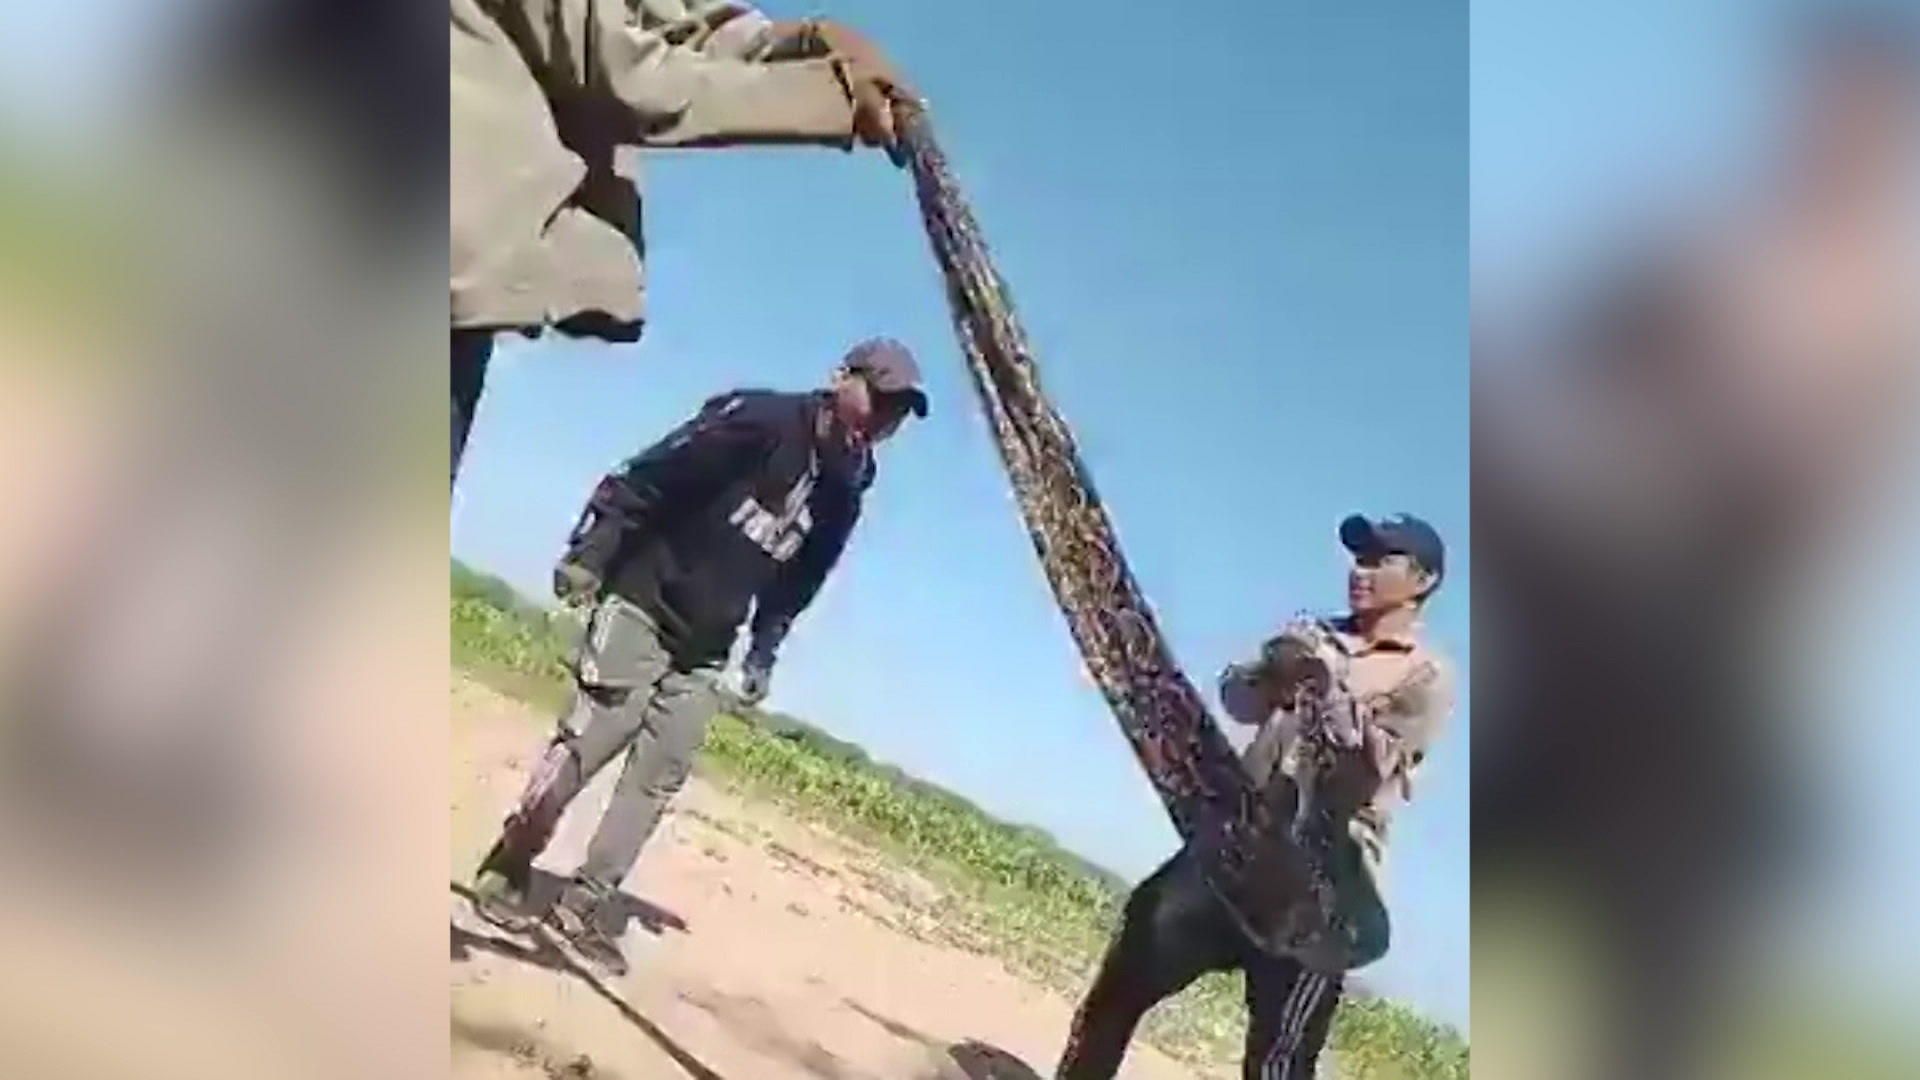 ¡Los hombres que abusan de las serpientes como si fueran una cuerda para saltar es una crueldad repugnante hacia los animales!